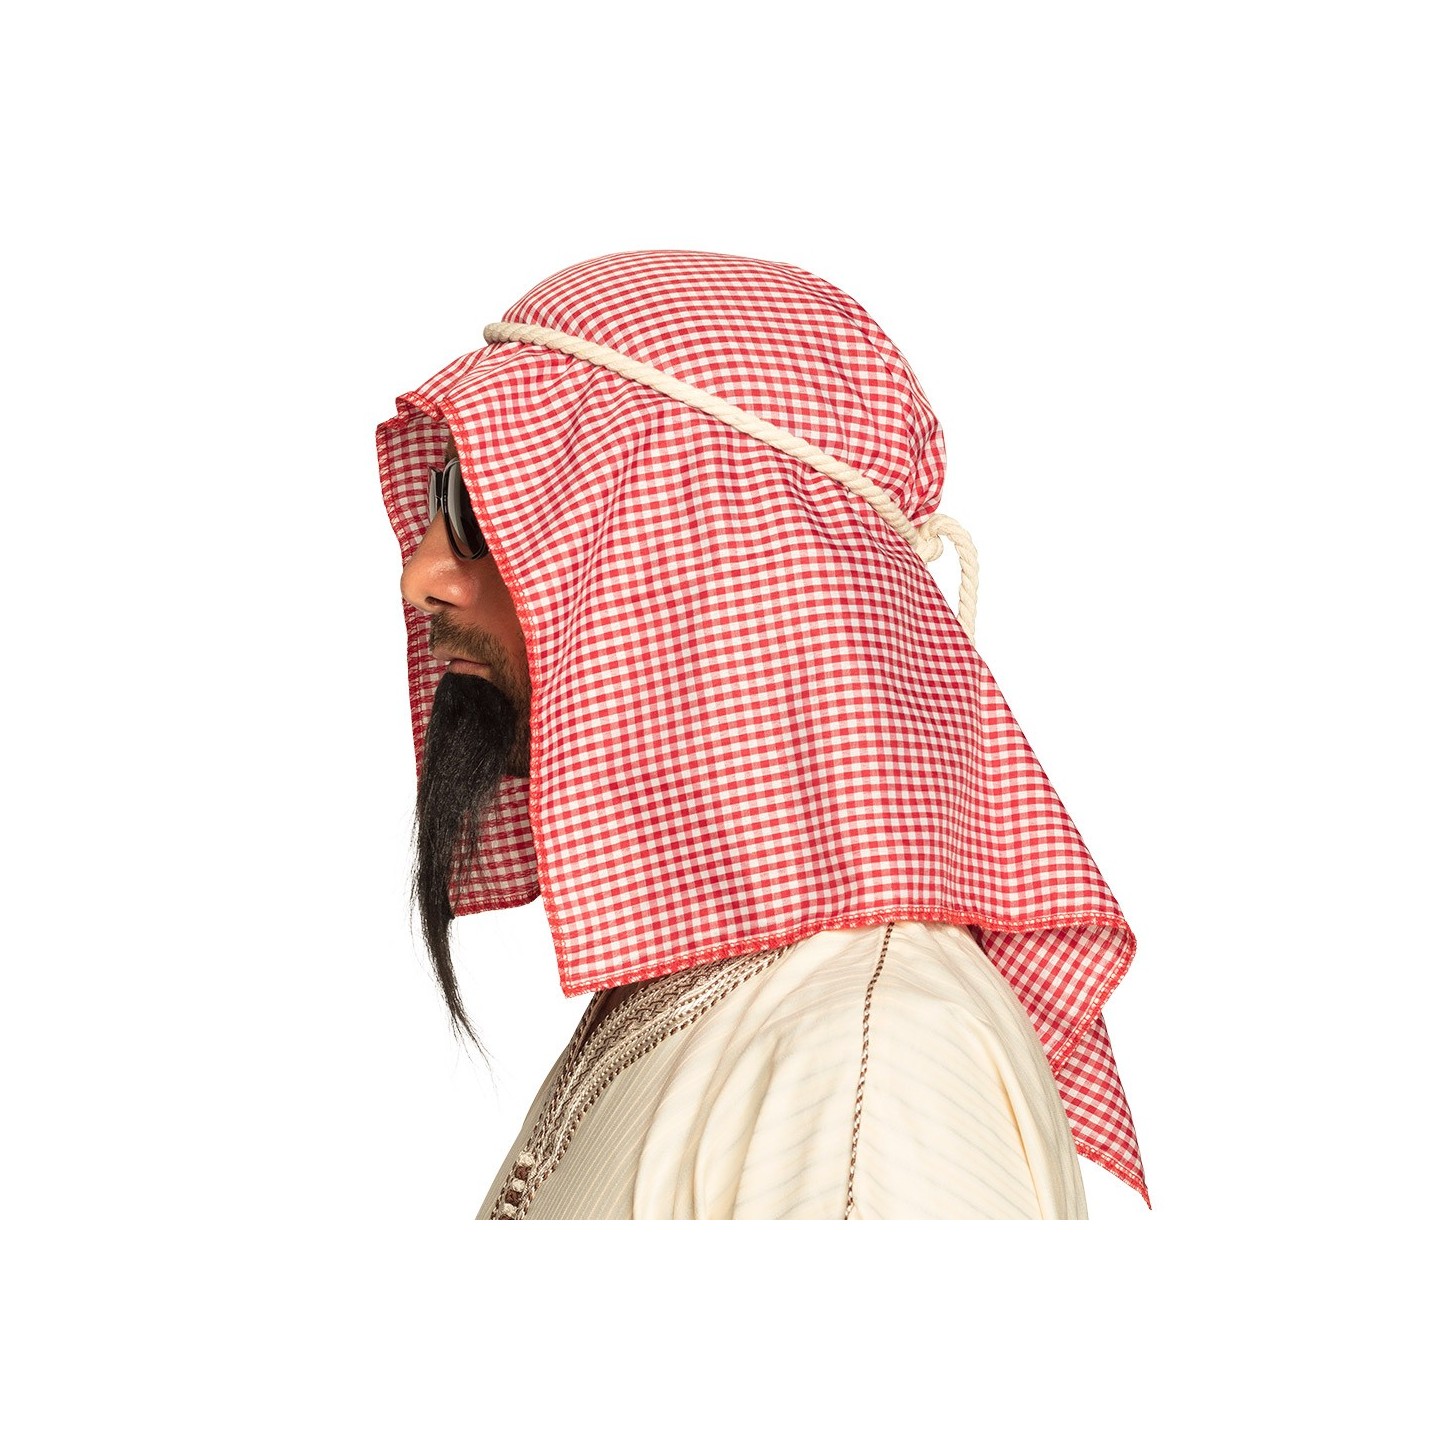 Arabische sjeik hoofddoek | Jokershop.be - kleding